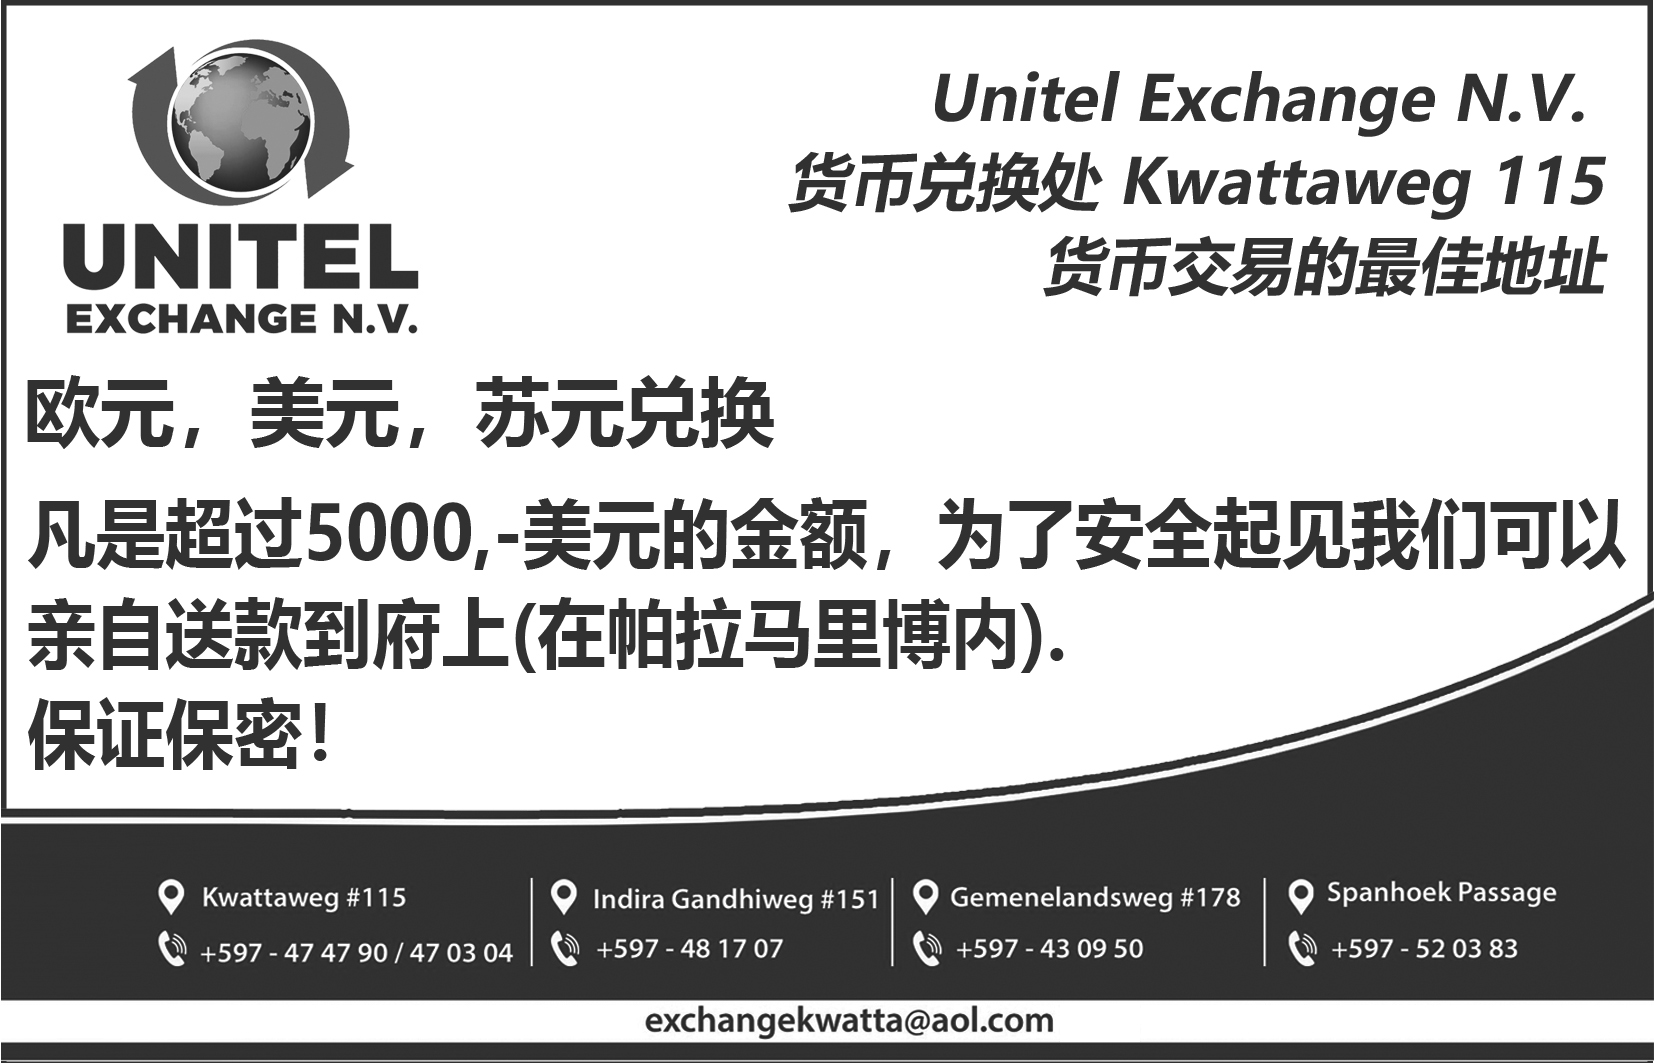 Unitel Exchange nv_9x14cm_blw (1).jpg